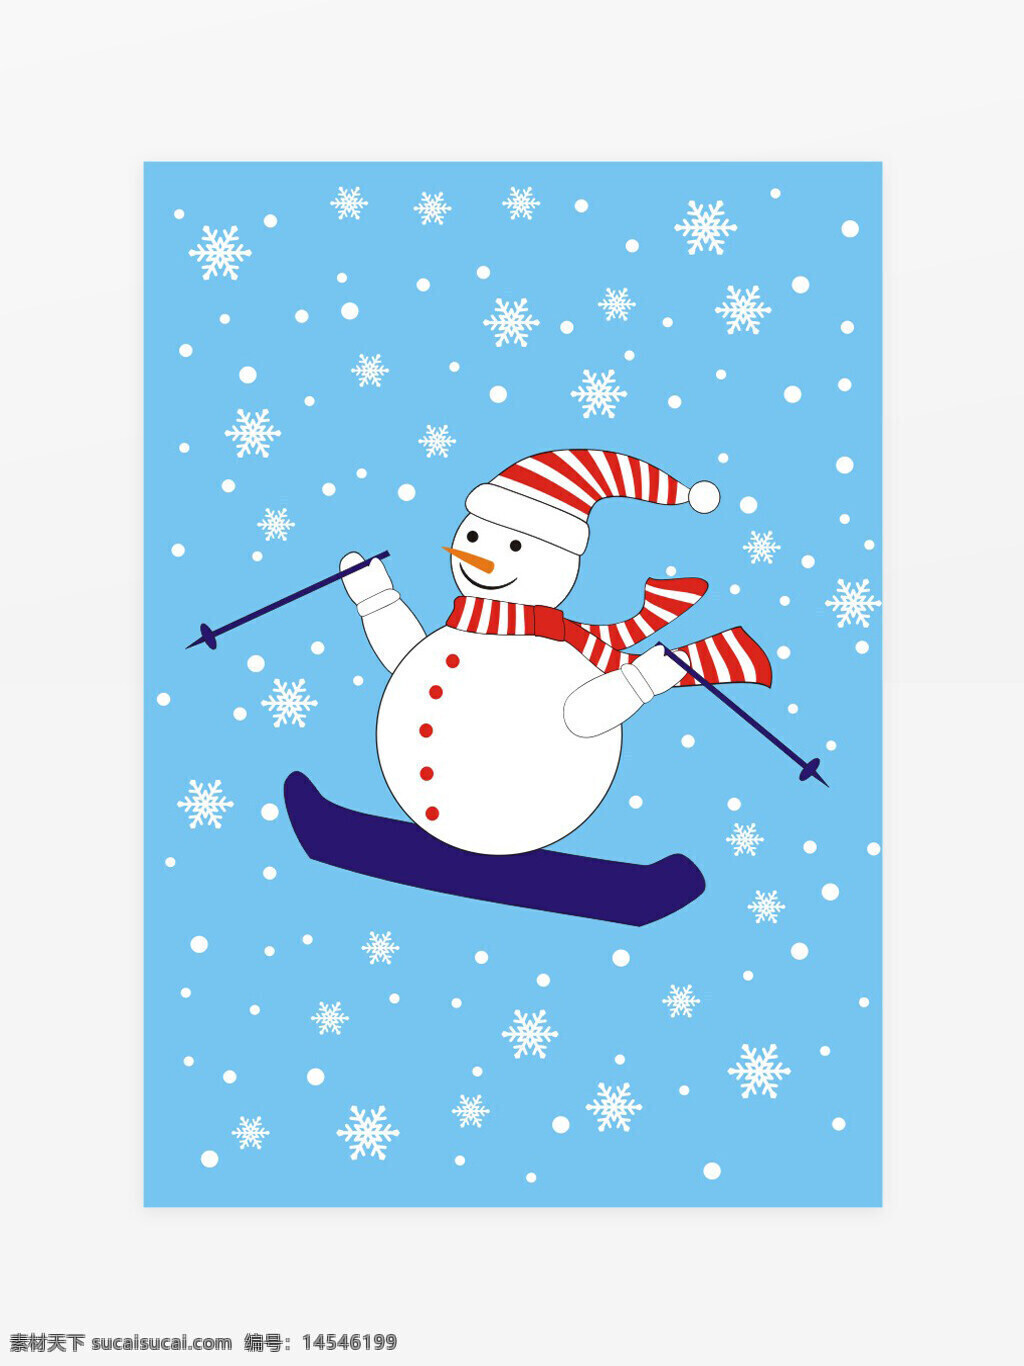 滑雪 雪人 冬季 圣诞 寒冷 雪花 矢量图 滑雪素材 滑雪运动 滑雪海报 滑雪展板 滑雪插画 冬天 滑雪文化 可修改